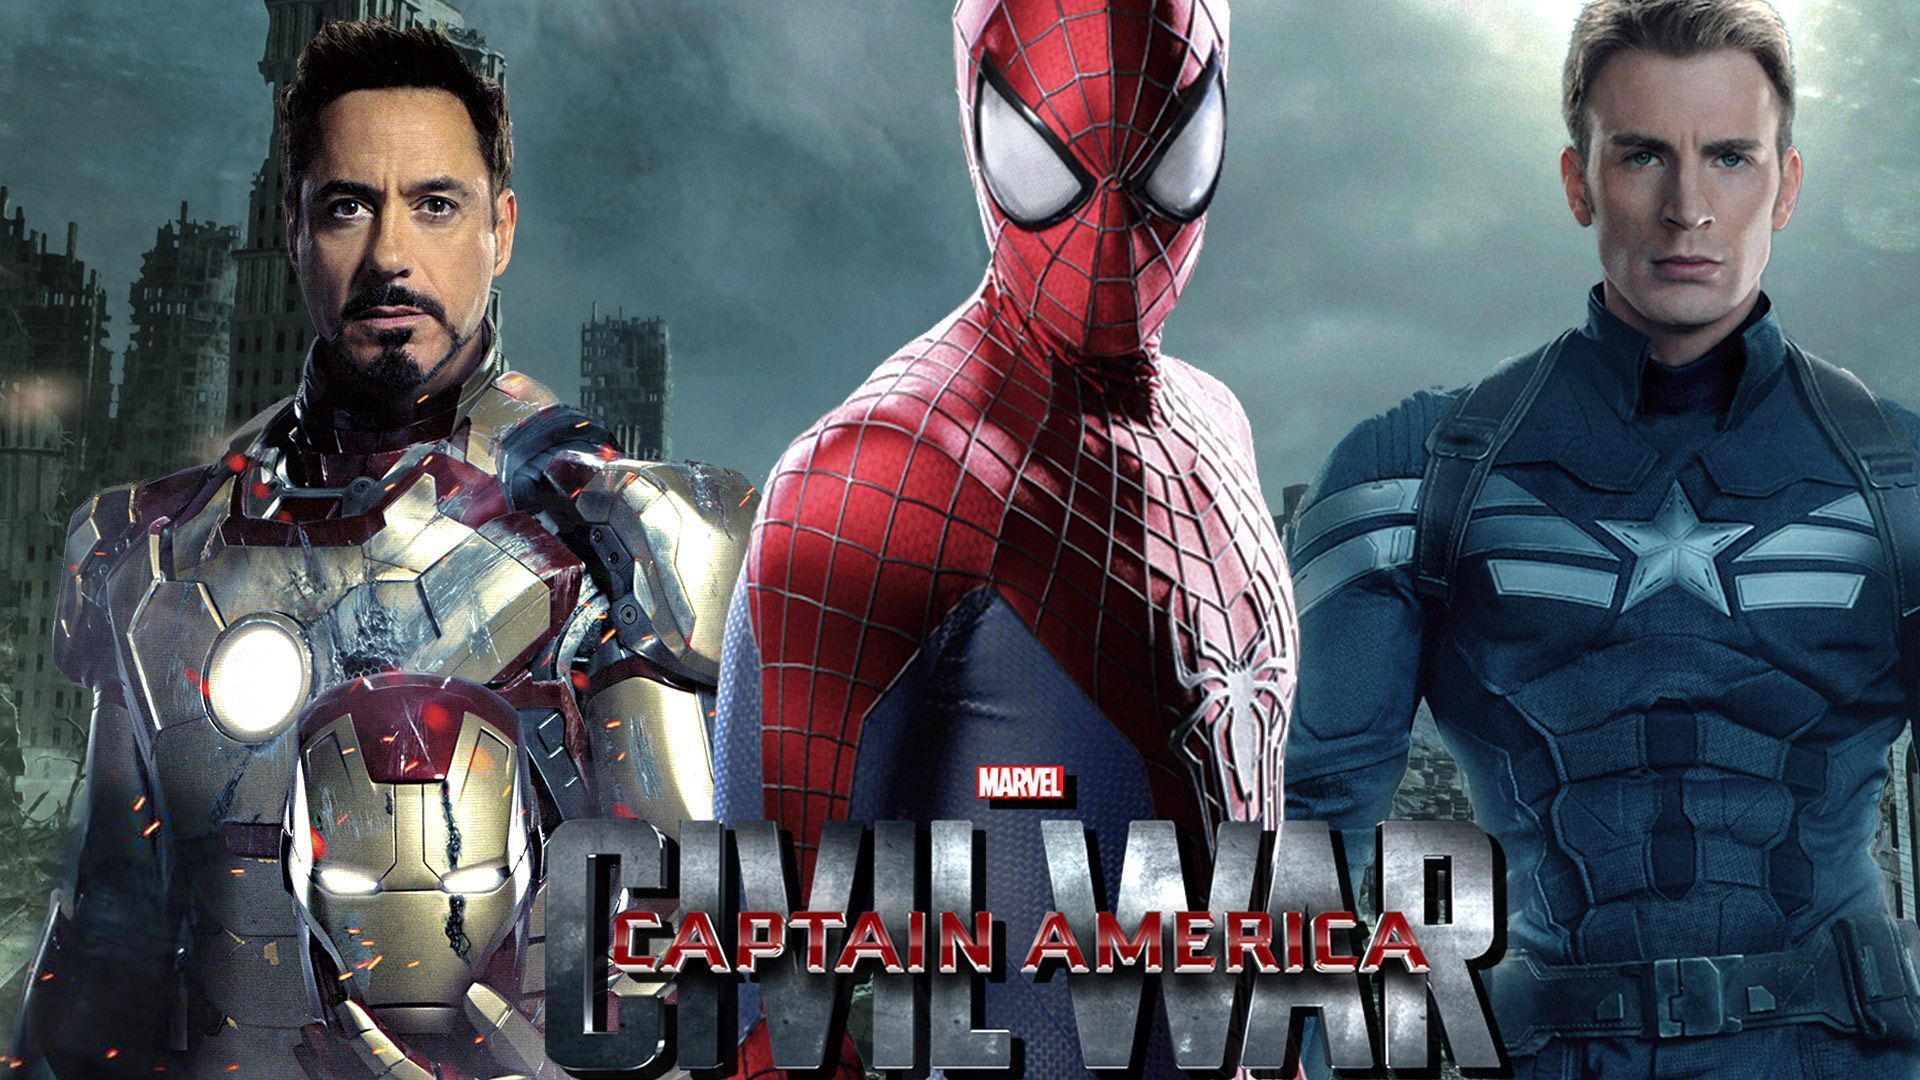 Captain America civil war spiderman wallpaper – Free full hd ...